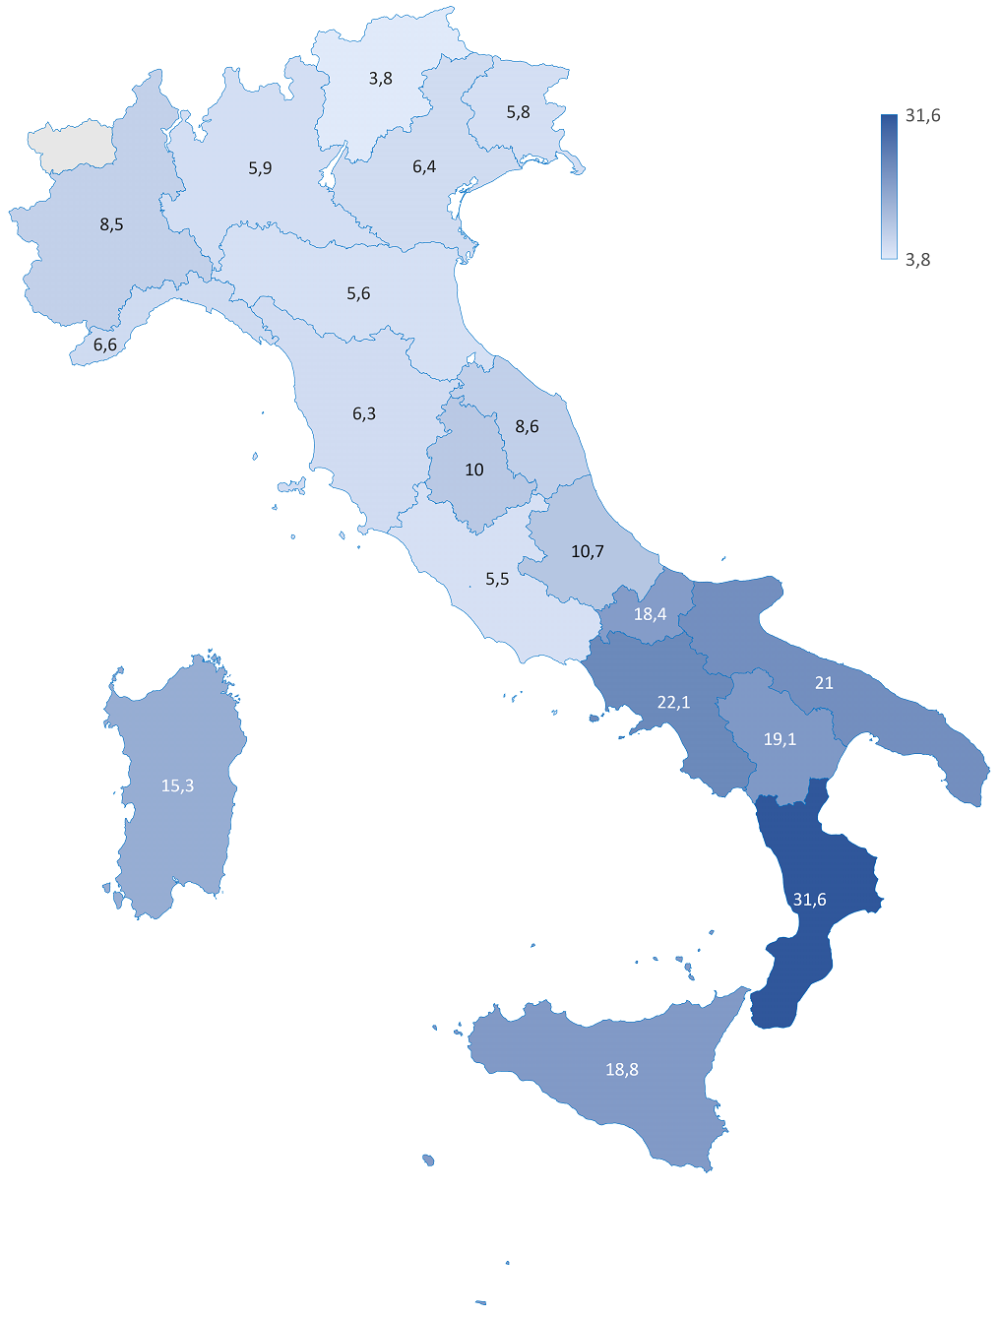 Rappresentazione grafica in forma di mappa dell'Italia con le regioni valorizzate dall'indicatore dell'Incidenza di povertà relativa nel 2022. Per i dati relativi al grafico andare alla Tabella accessibile presente sotto il titolo del grafico https://www.regione.toscana.it/documents/10180/12588189/Tabella+accessibile_incidenza_poverta_relativa+regioni+2022.htm/1f575093-ed7d-b451-0d63-49d162fa6a48?t=1698442916038